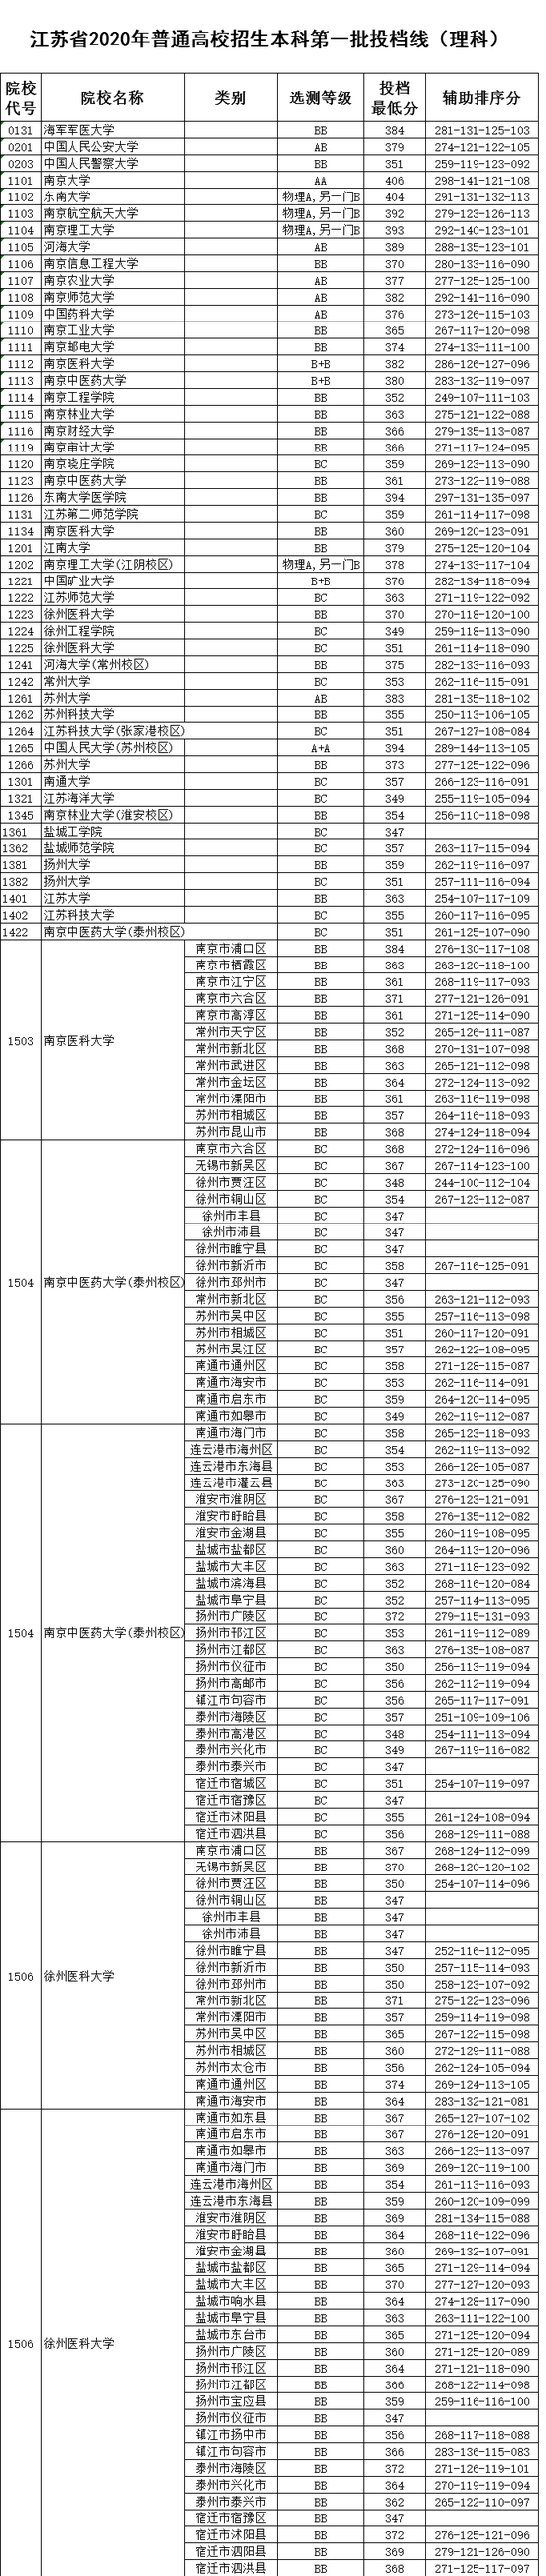 江苏省2020高考省排名_江苏省2020年高考,本科一批最低投档分已整理,文科生